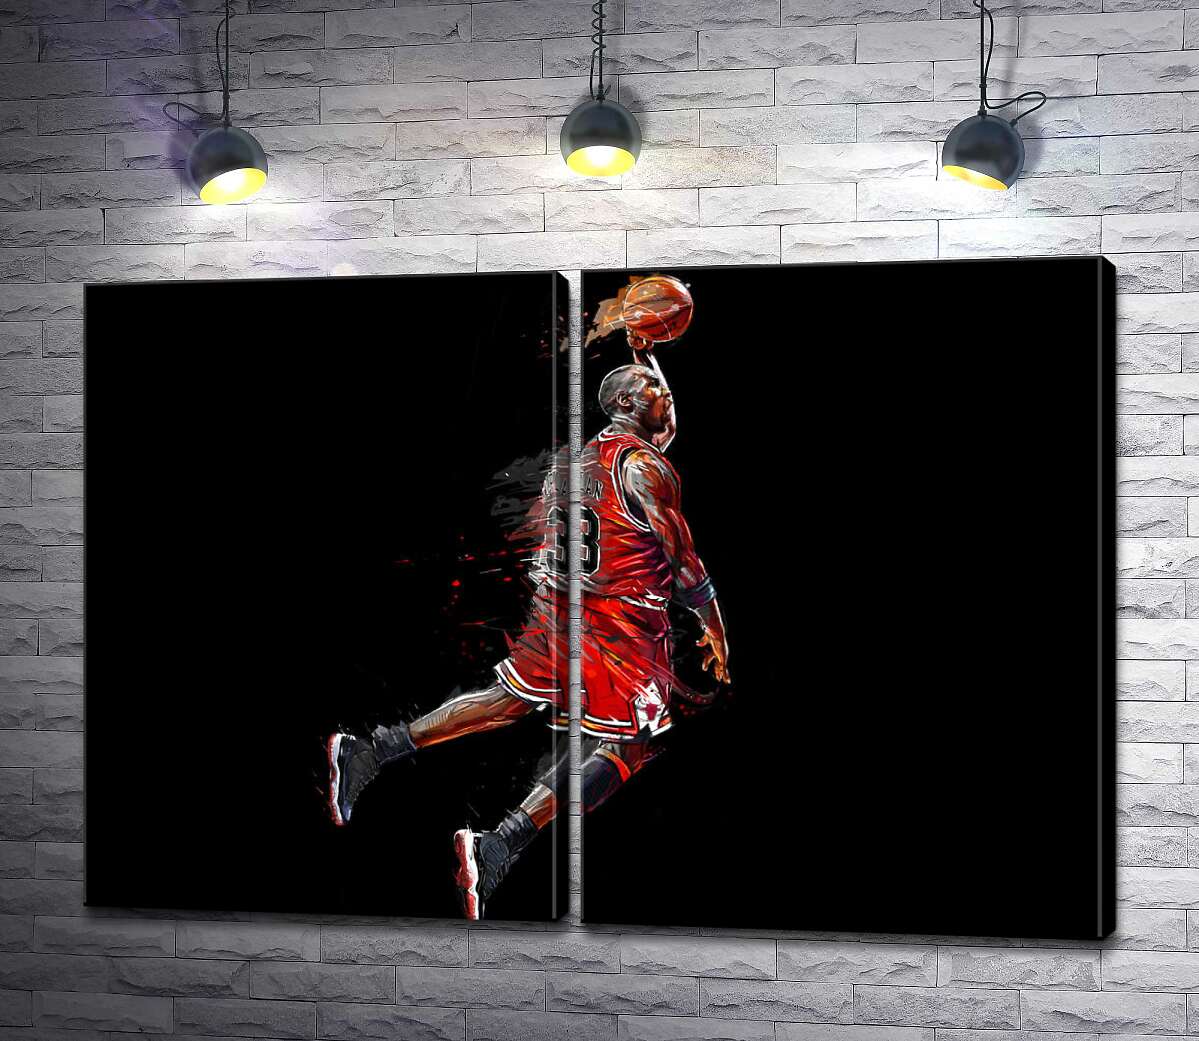 модульная картина Легендарный баскетболист, Майкл Джордан (Michael Jordan), в прыжке